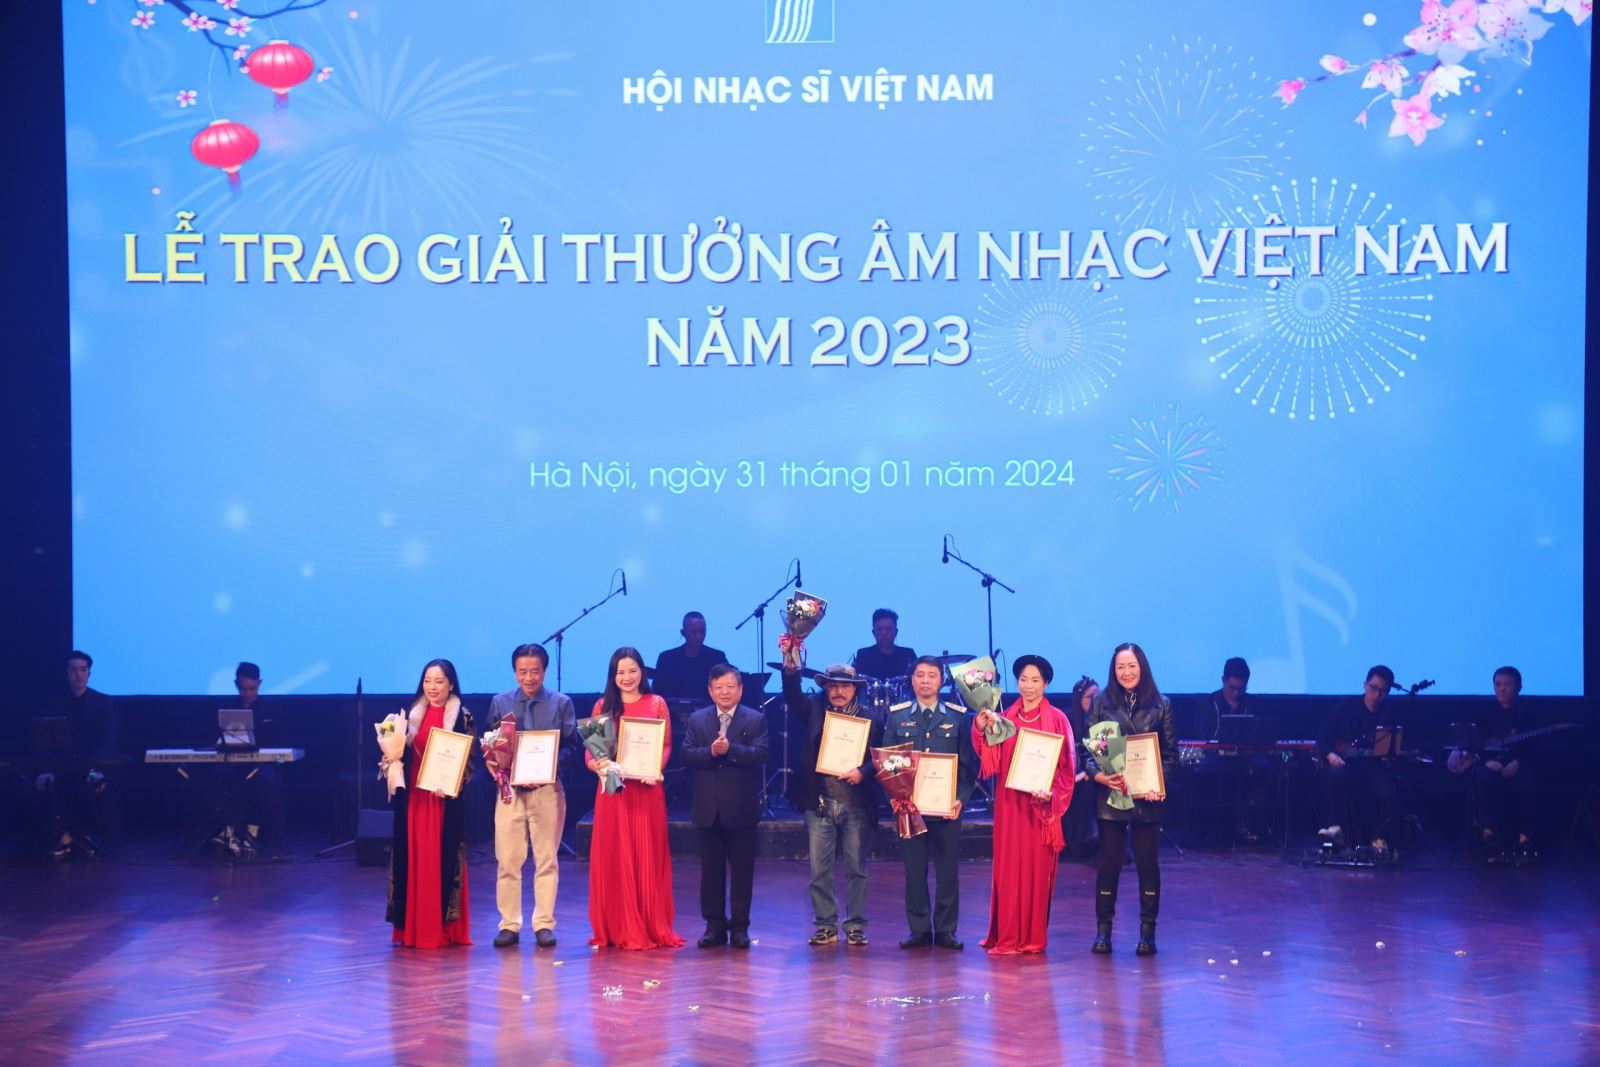  93 giải thưởng Âm nhạc Việt Nam năm 2023